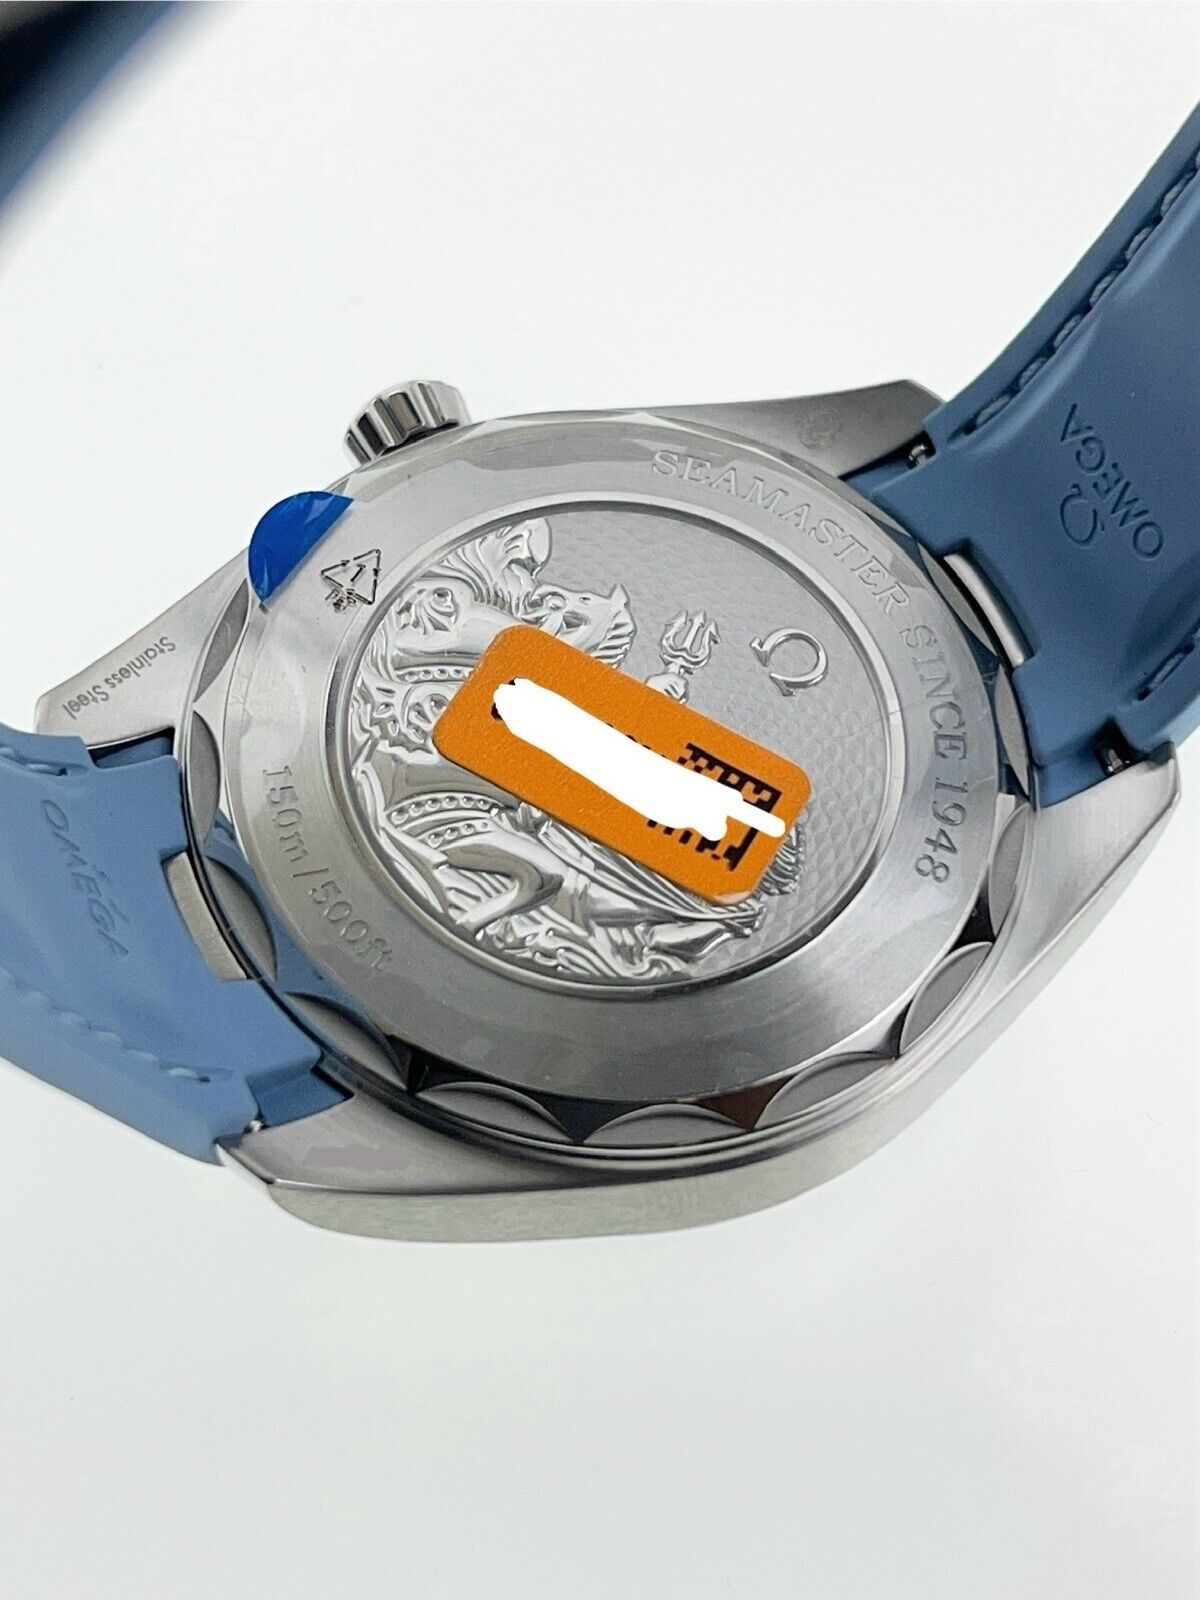 NEW Omega Seamaster Aqua Terra Worldtimer Summer Blue 43mm Automatic Watch